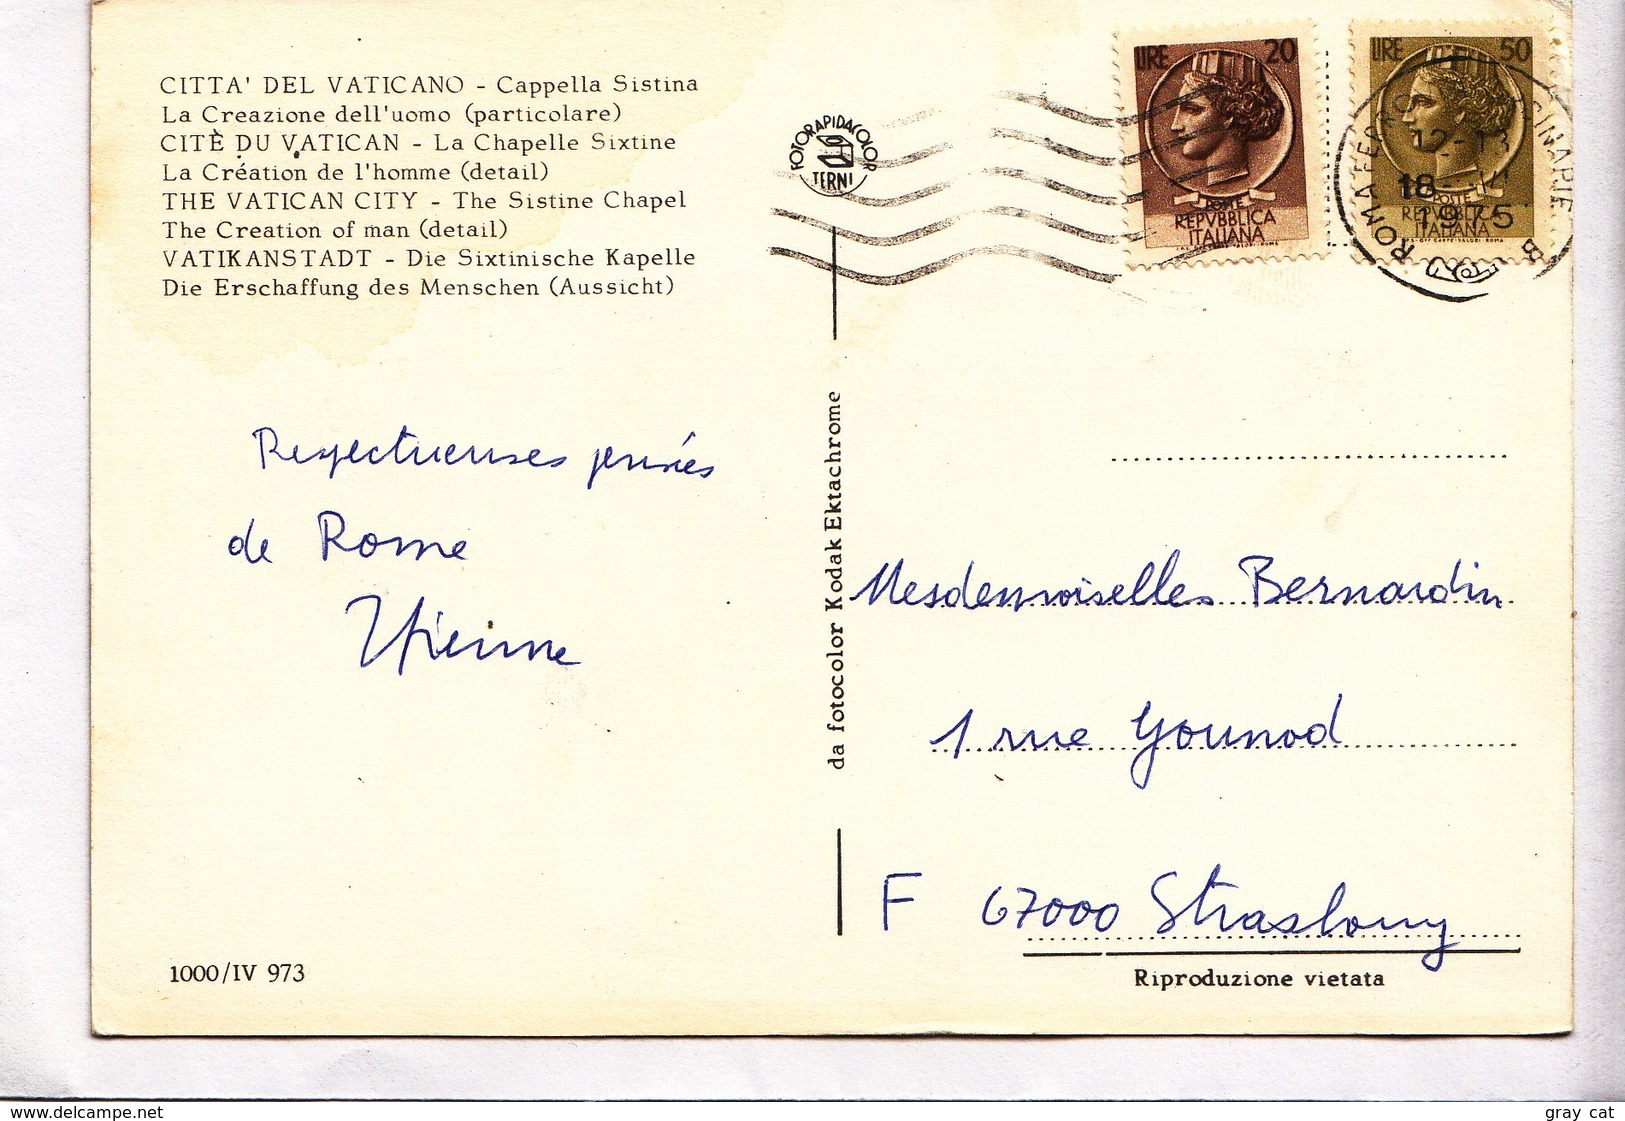 CITTA' DEL VATICANO, Cappella Sistina, La Creazione Dell'uomo, Particolare, 1975 Used Postcard [22905] - Vatican